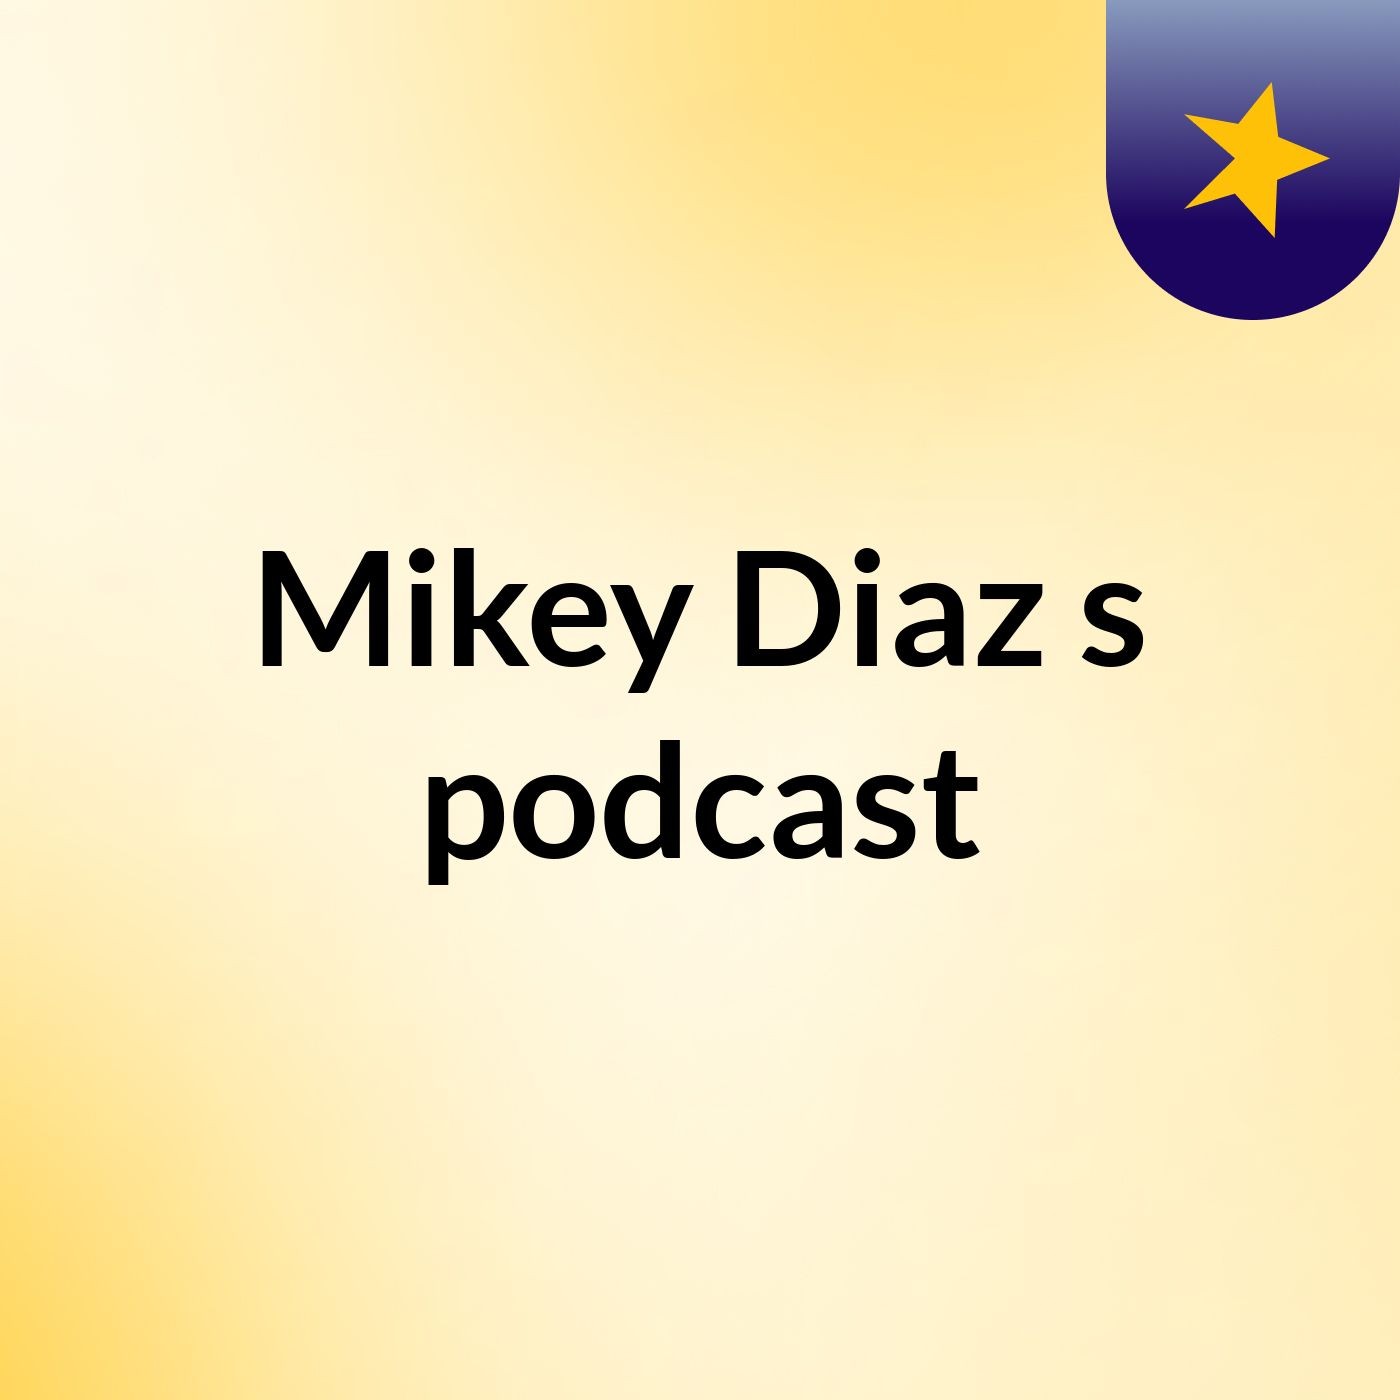 Mikey Diaz's podcast